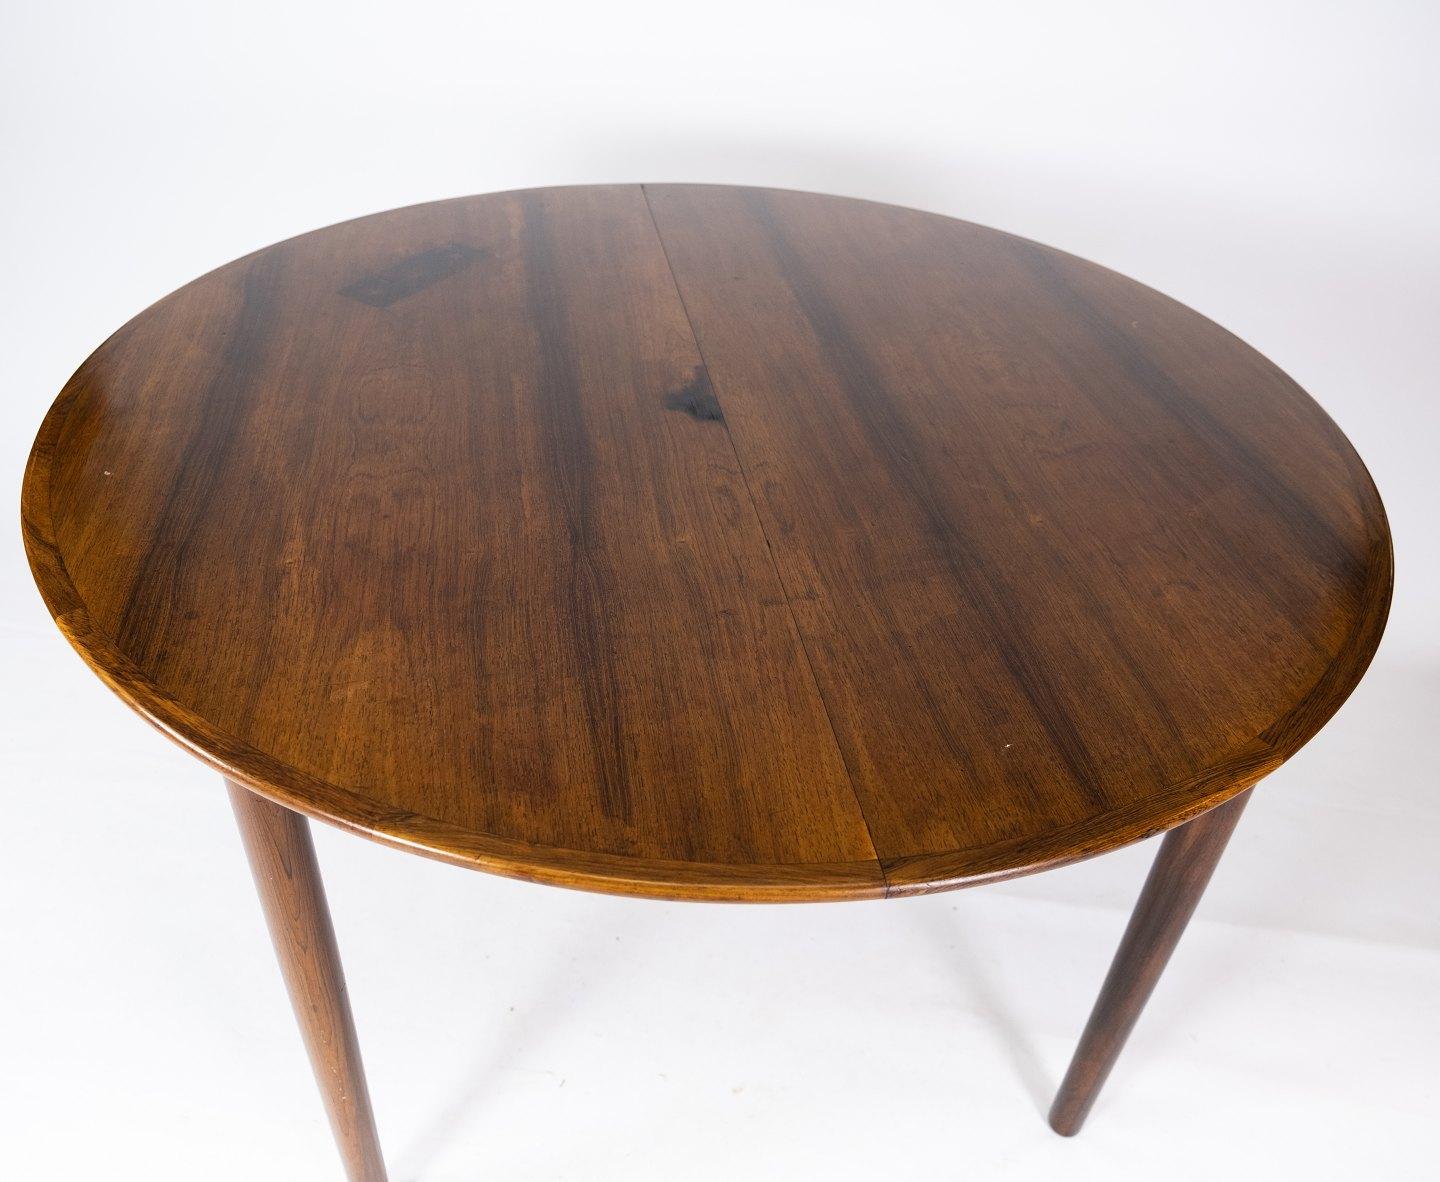 Dieser Esstisch aus Palisanderholz, entworfen von Arne Vodder in den 1960er Jahren, ist ein bemerkenswertes Beispiel für dänisches Möbeldesign aus dieser Zeit. Die warmen Farben und schönen Muster des Palisanderholzes verleihen dem Tisch ein